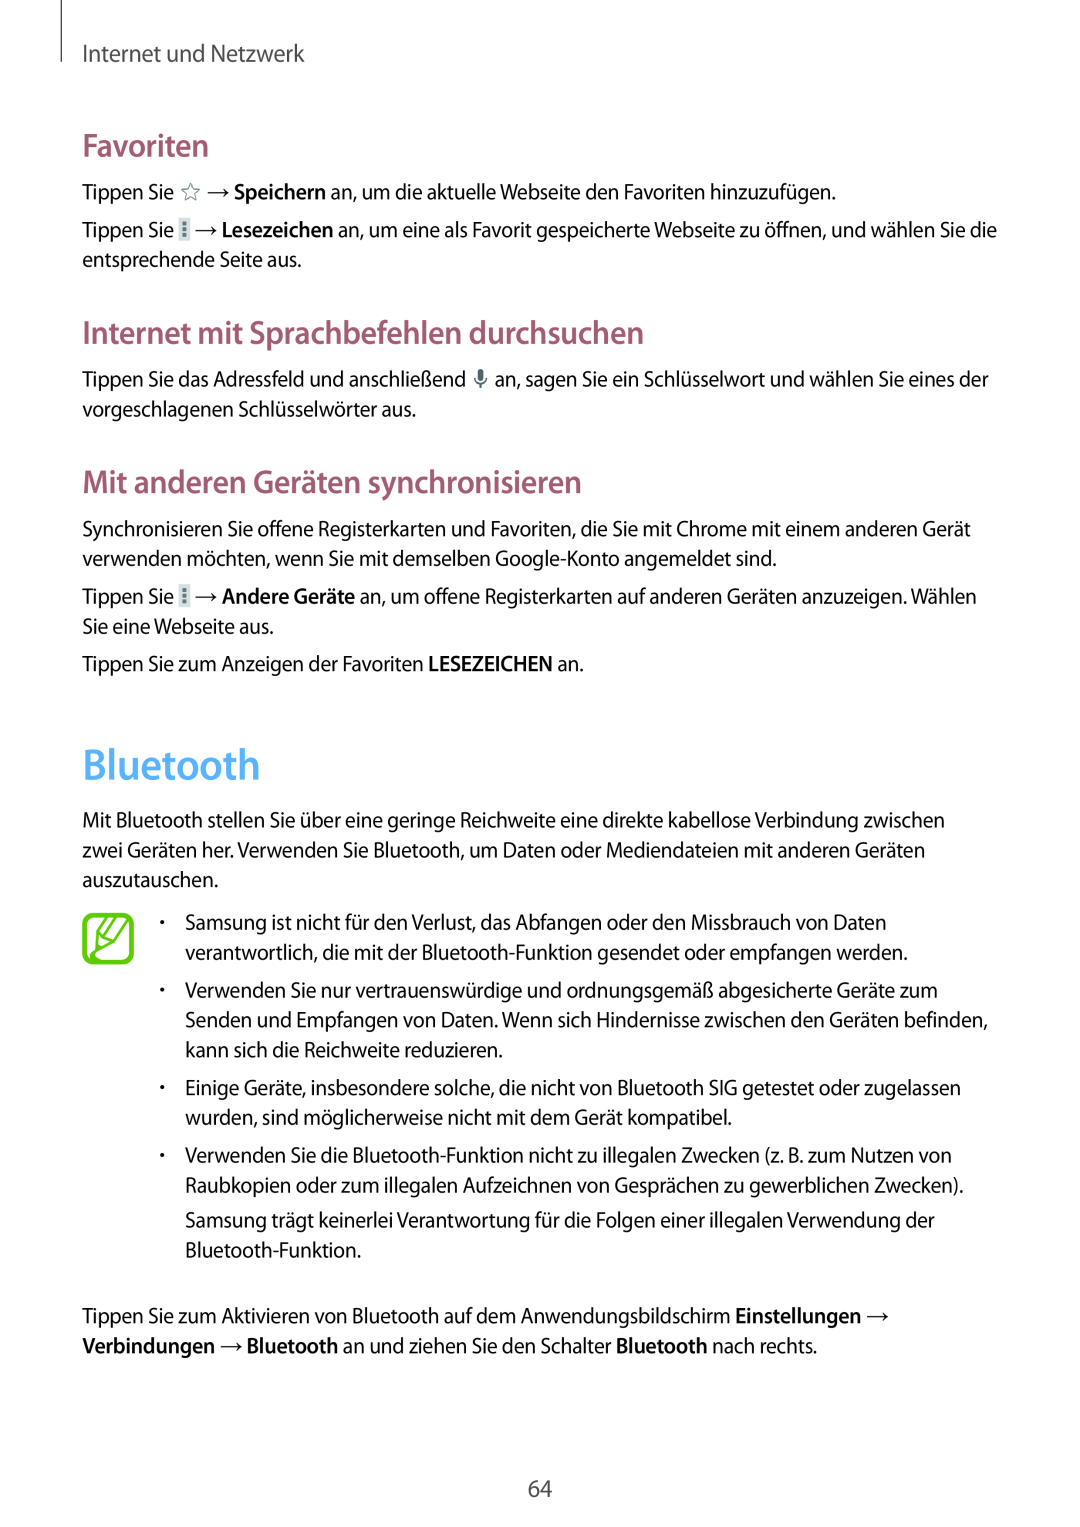 Samsung SM-P9000ZWAXEF Bluetooth, Mit anderen Geräten synchronisieren, Favoriten, Internet mit Sprachbefehlen durchsuchen 